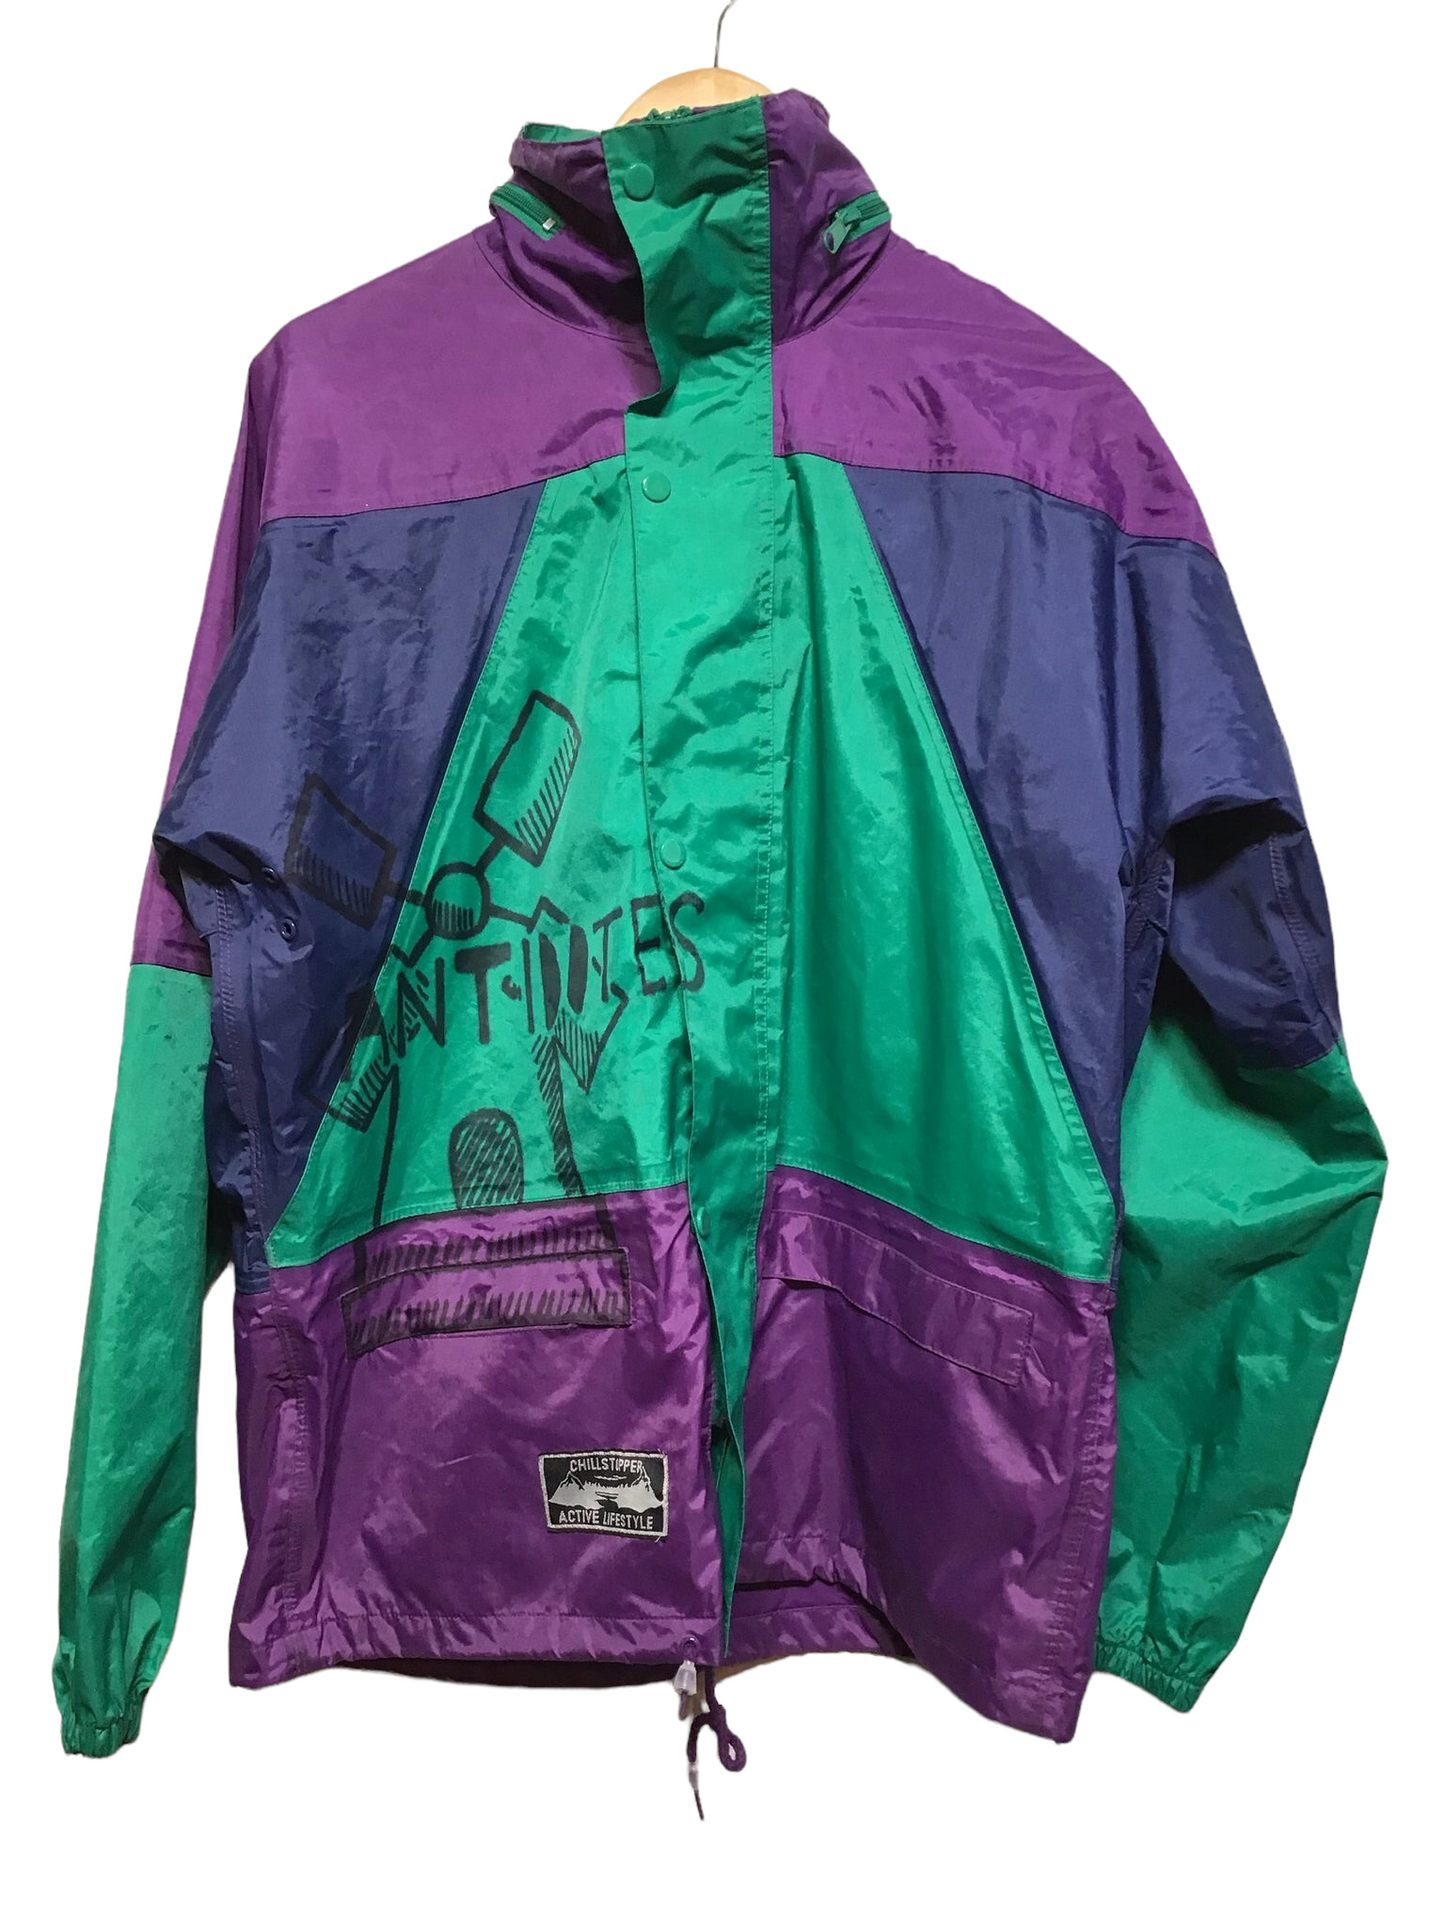 Festival Wind Breaker Jacket (Size XXL)